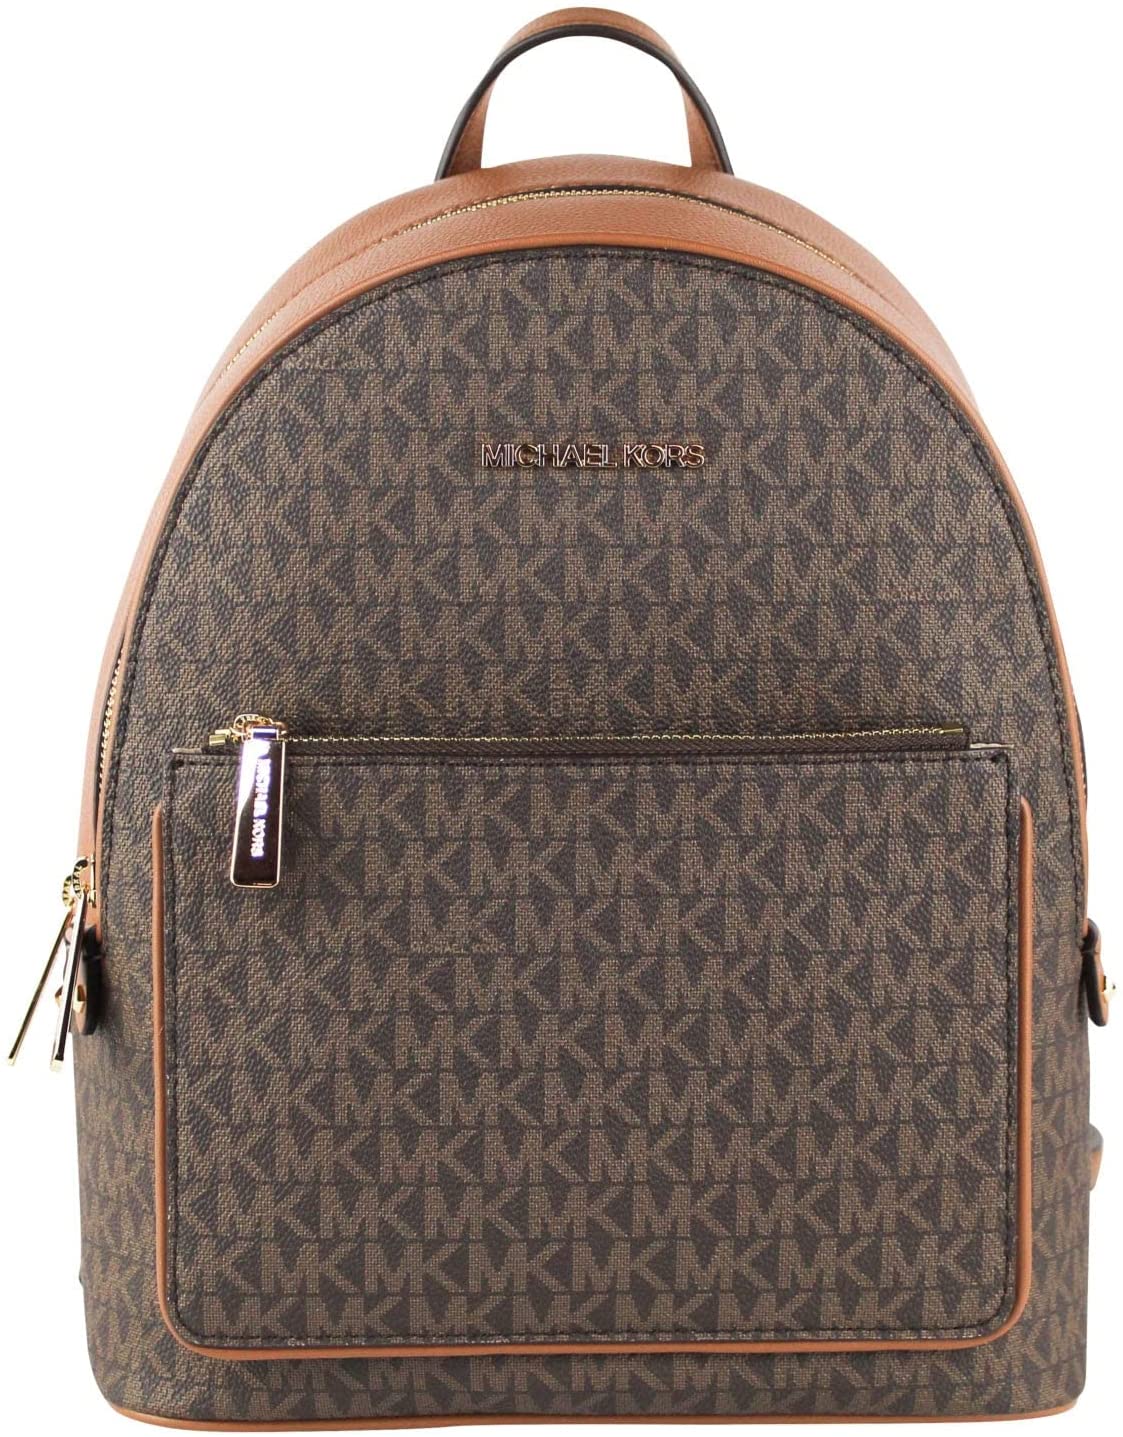 Michael Kors Adina Medium Pebbled Leather Backpack